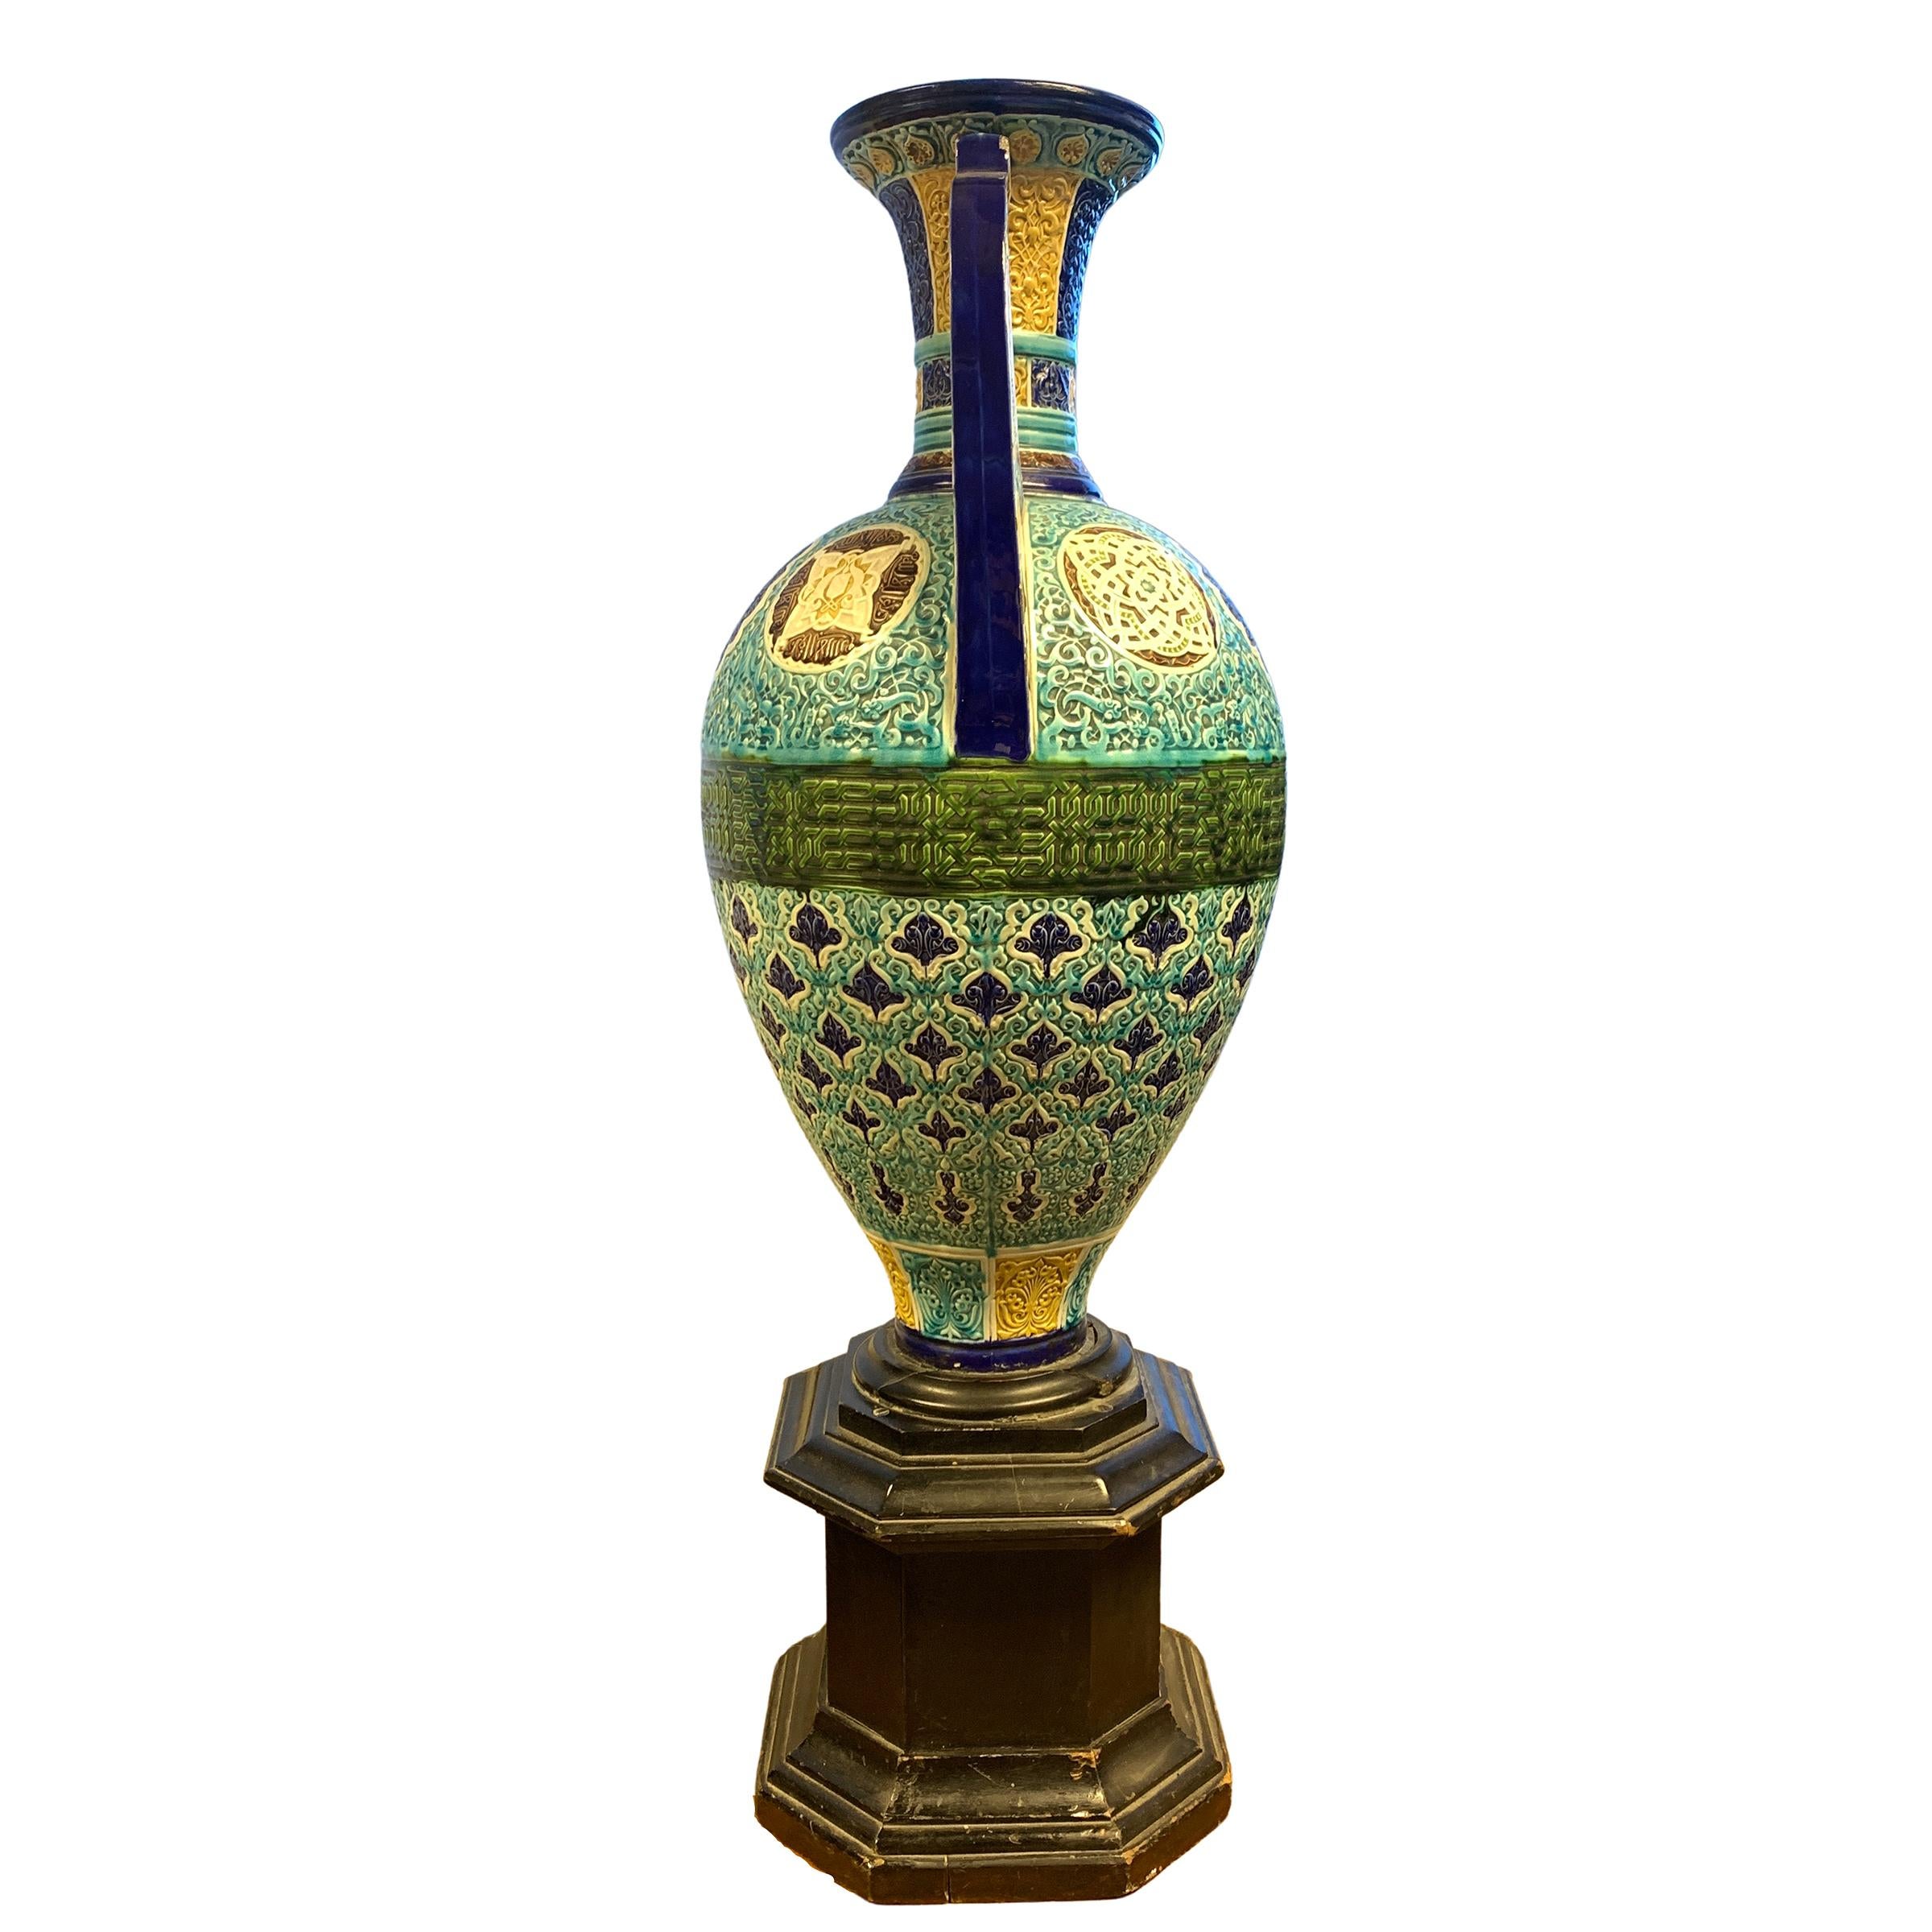 Vase de style Alhambra de qualité exquise en turquoise, jaune, vert et bleu avec gravure et calligraphie tout autour du vase. 
  